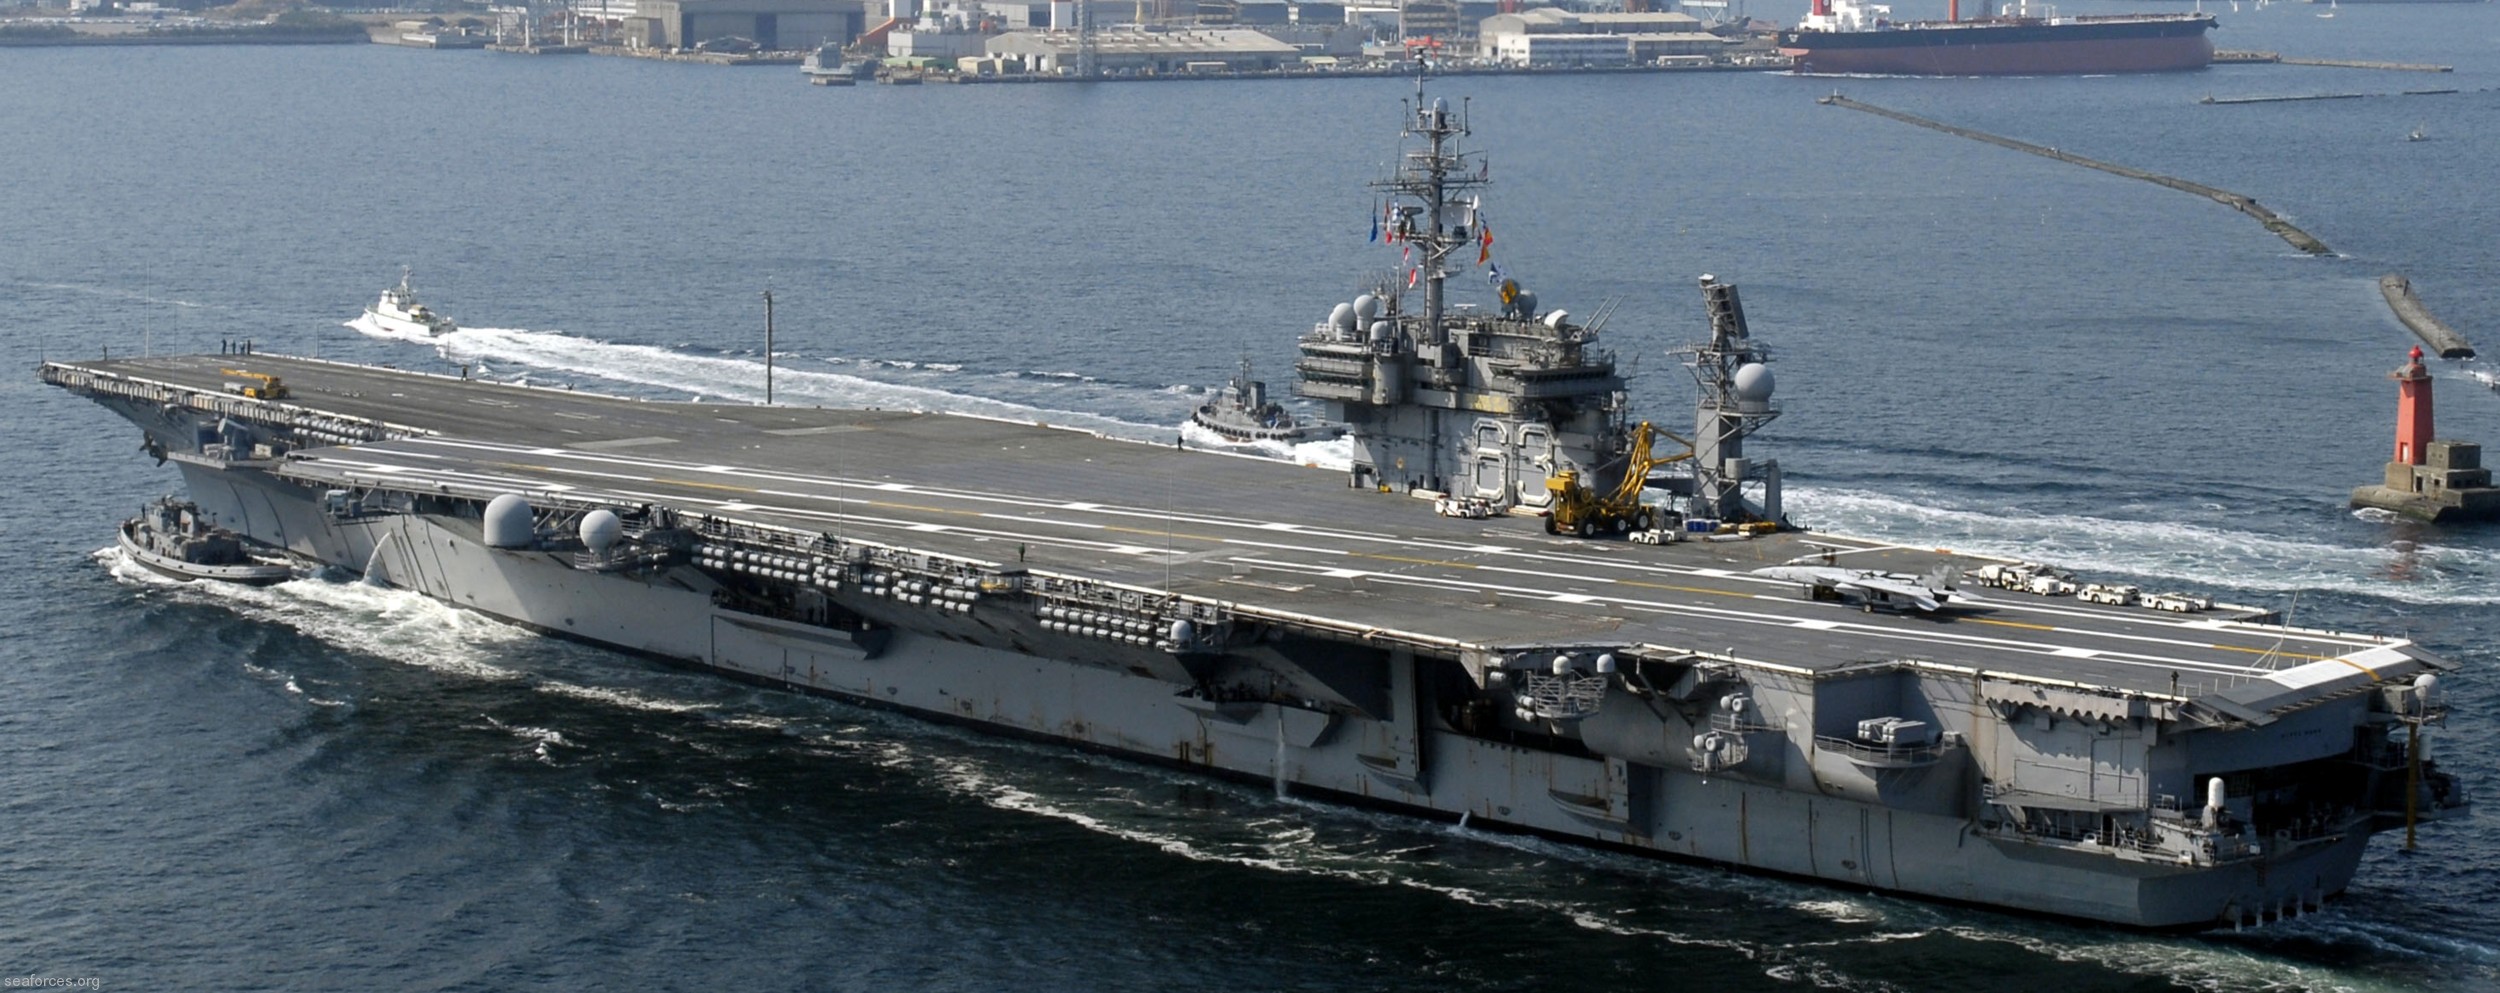 cv-63 uss kitty hawk aircraft carrier 77